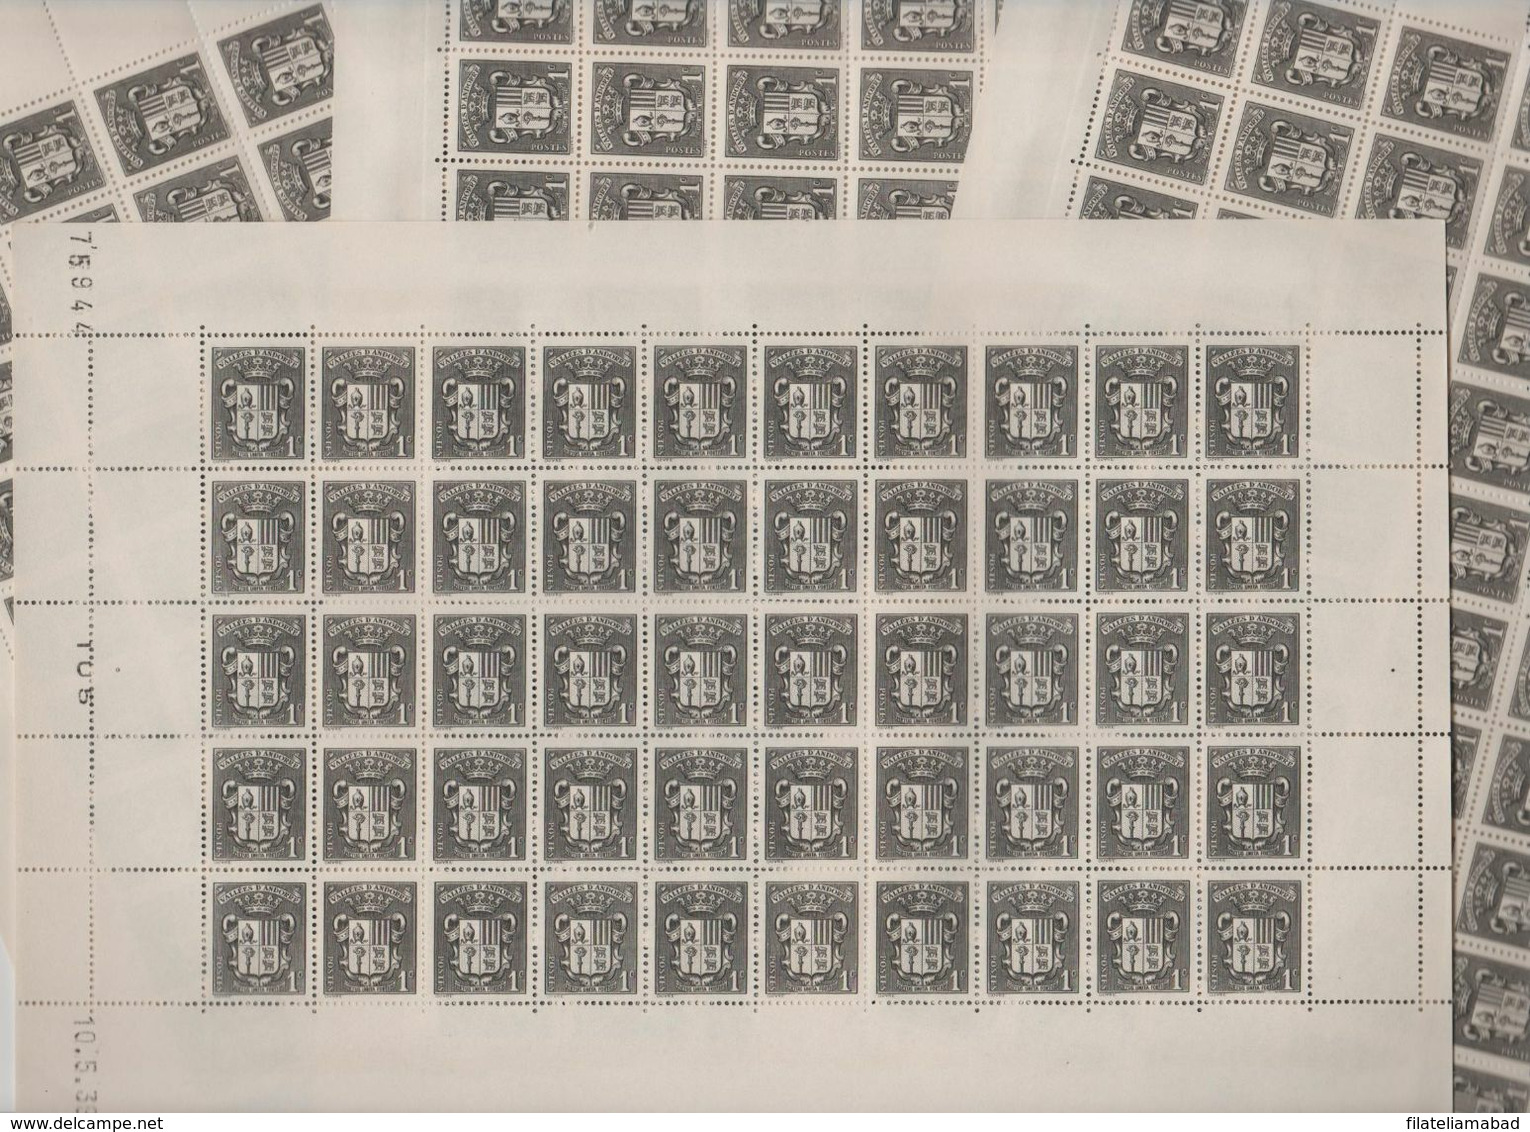 ANDORRA CORREO F..200 SELLOS Nº 47 DEL AÑO 1937-43 EN MUY NUEN ESTADO C. 100,00€  (C.H) - Blocs-feuillets